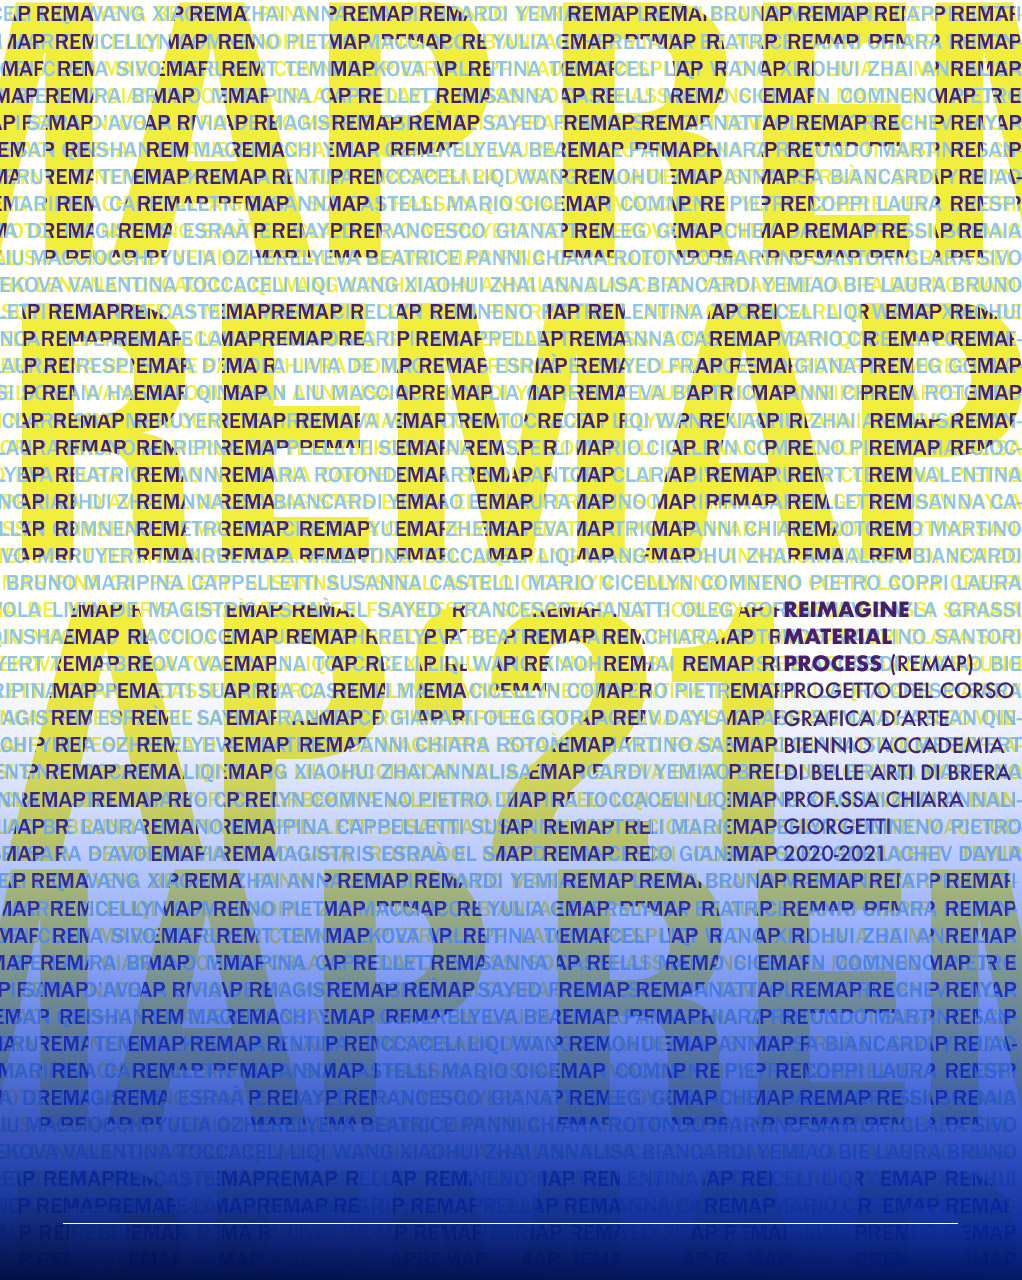 immagine con righe continue della parola Remap '21 che costiuiscono parole più grandi di Remap 21 in colore giallo 